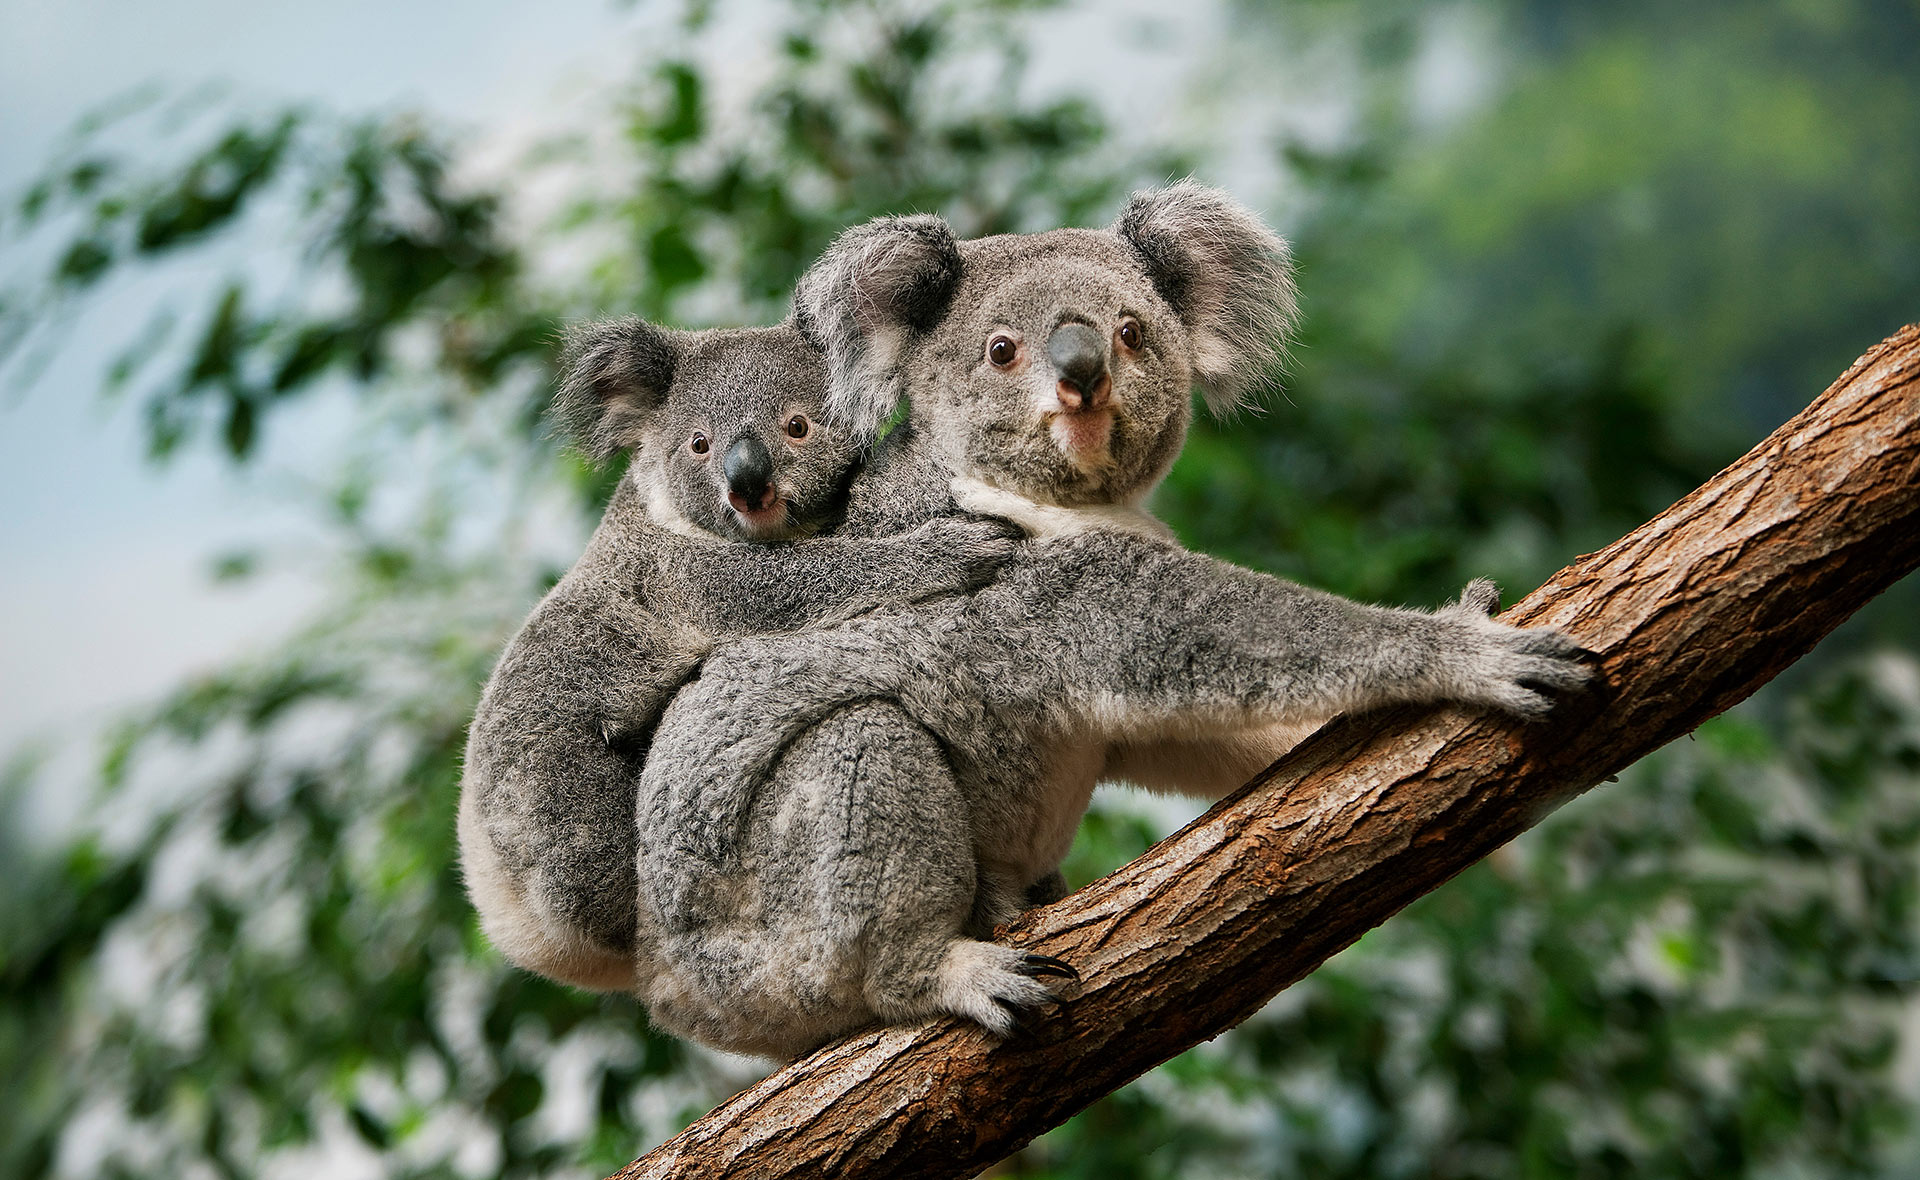 Australia declara al koala especie en peligro de extinción